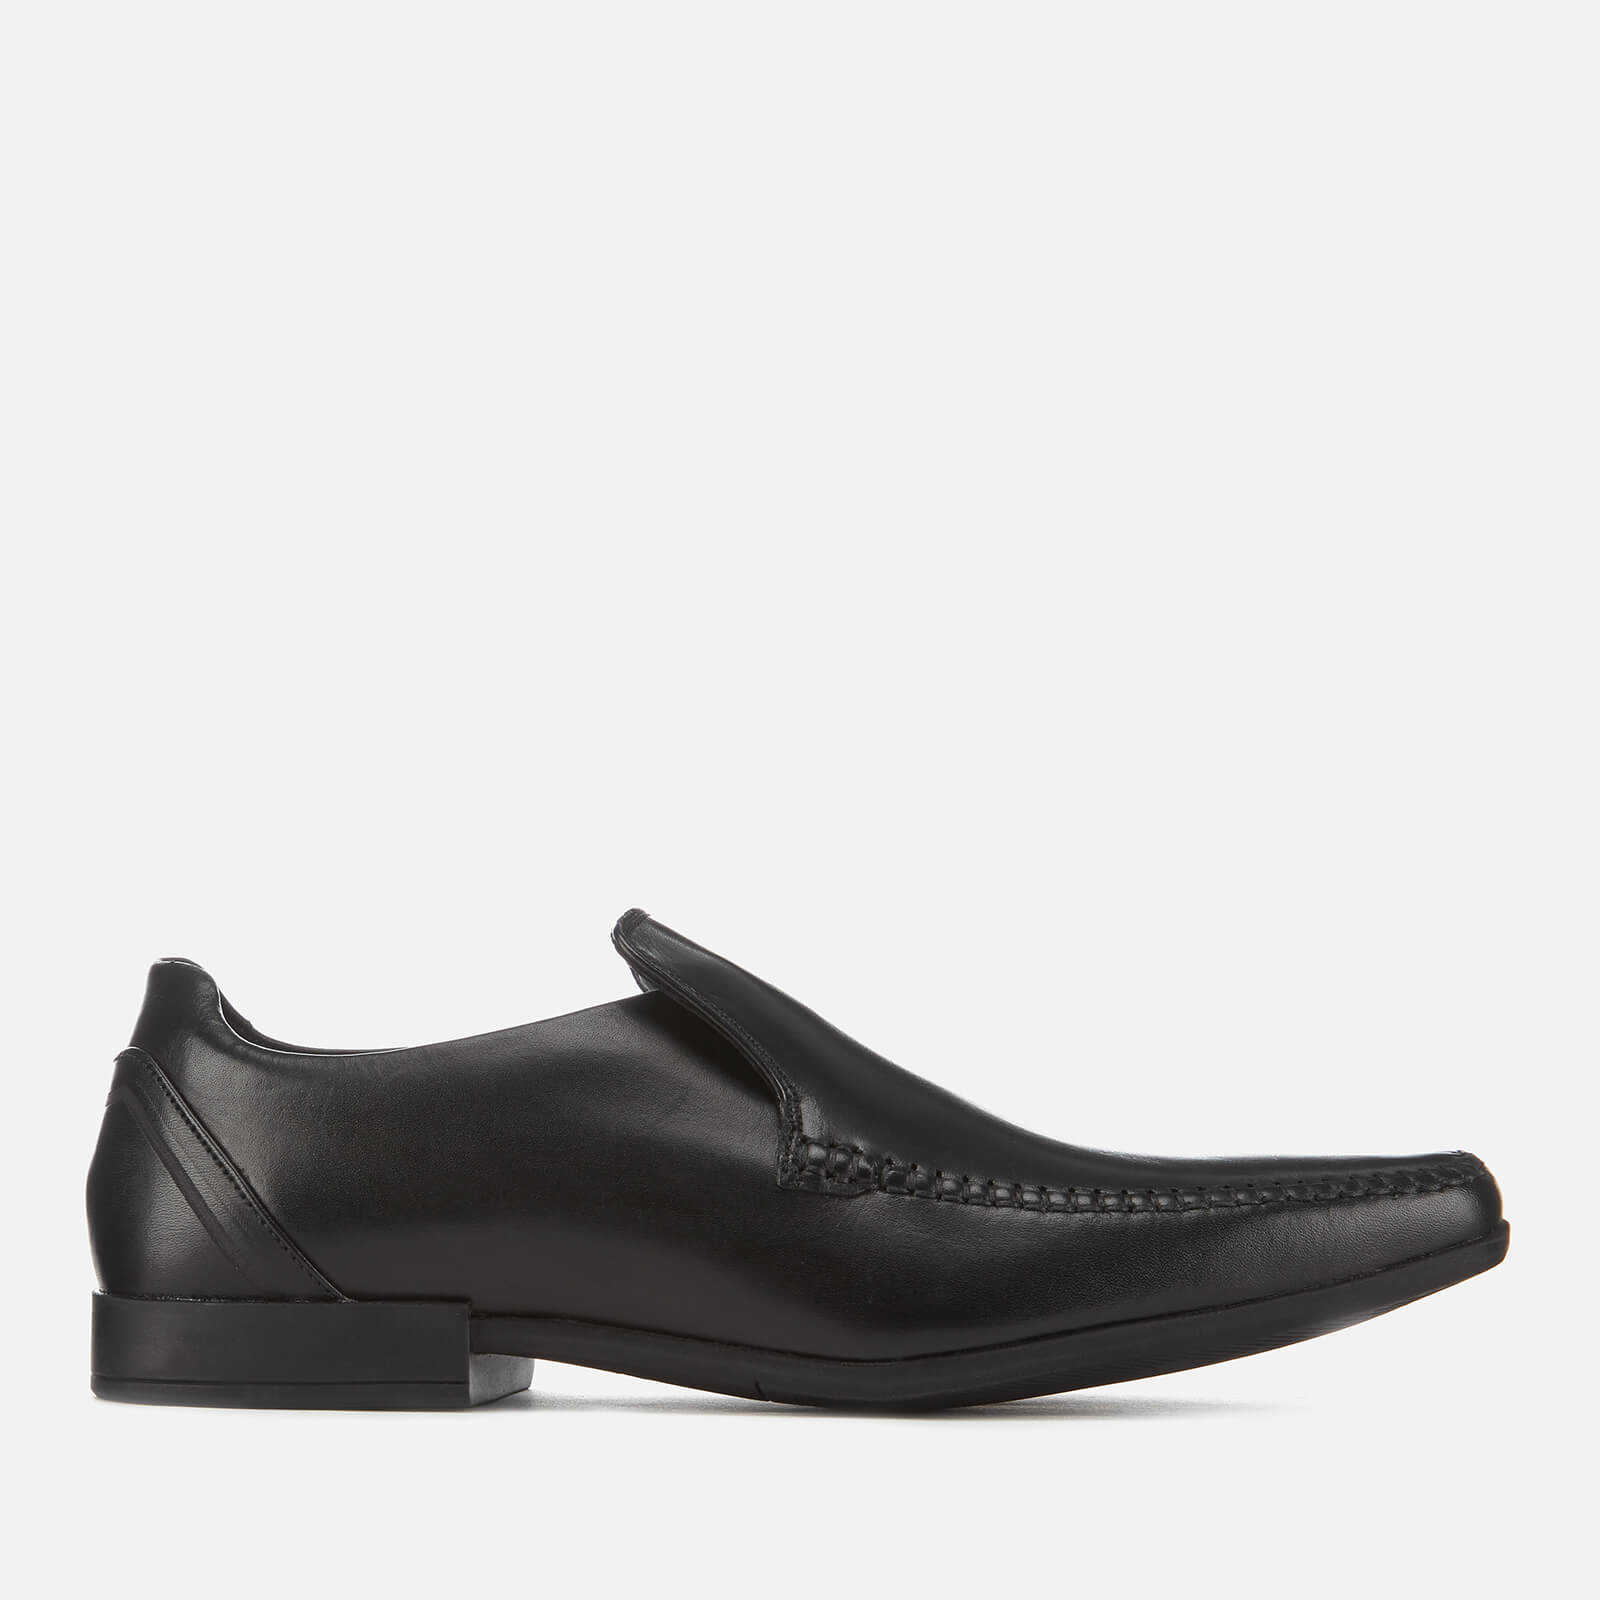 Clarks Men's Glement Seam Leather Slip-On Shoes - Black - UK 11